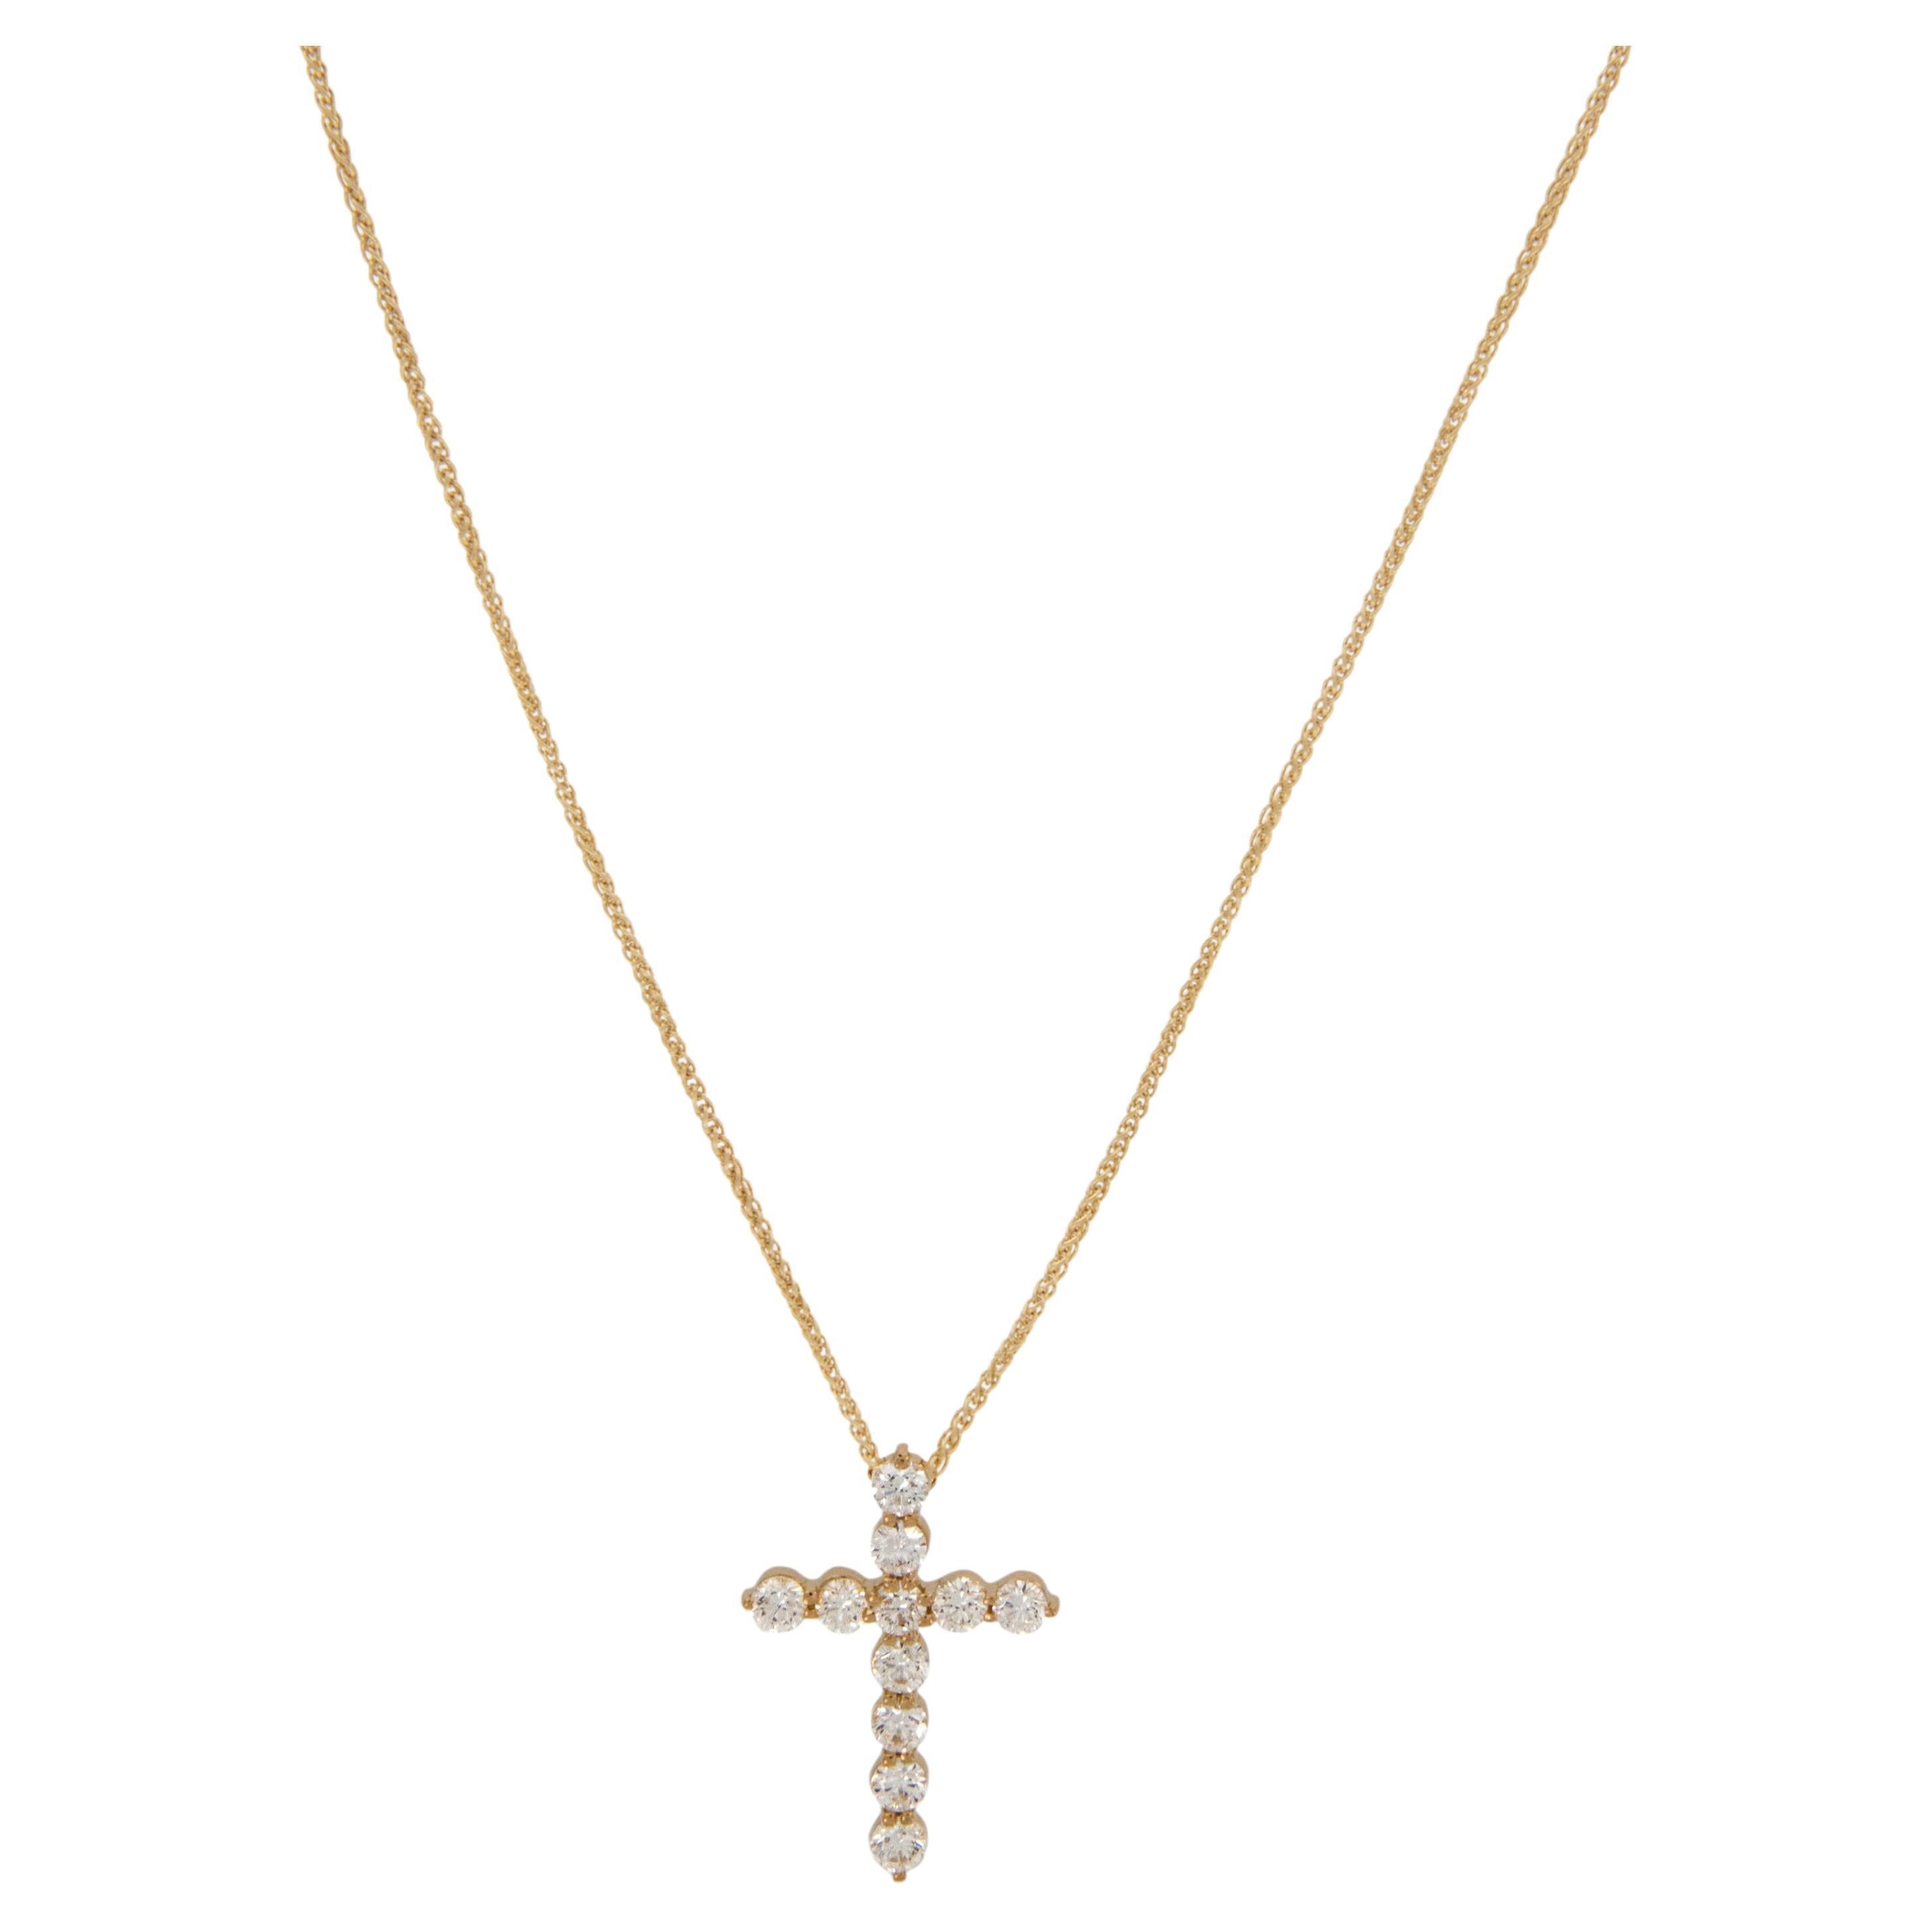 Dieses elegante Kreuz aus 18-karätigem Gelbgold ist mit feinen Diamanten (VS, G-H) von 0,82 Cttw. verziert und ist die perfekte Ergänzung für Ihre Garderobe. Aufgehängt an einer robusten 18